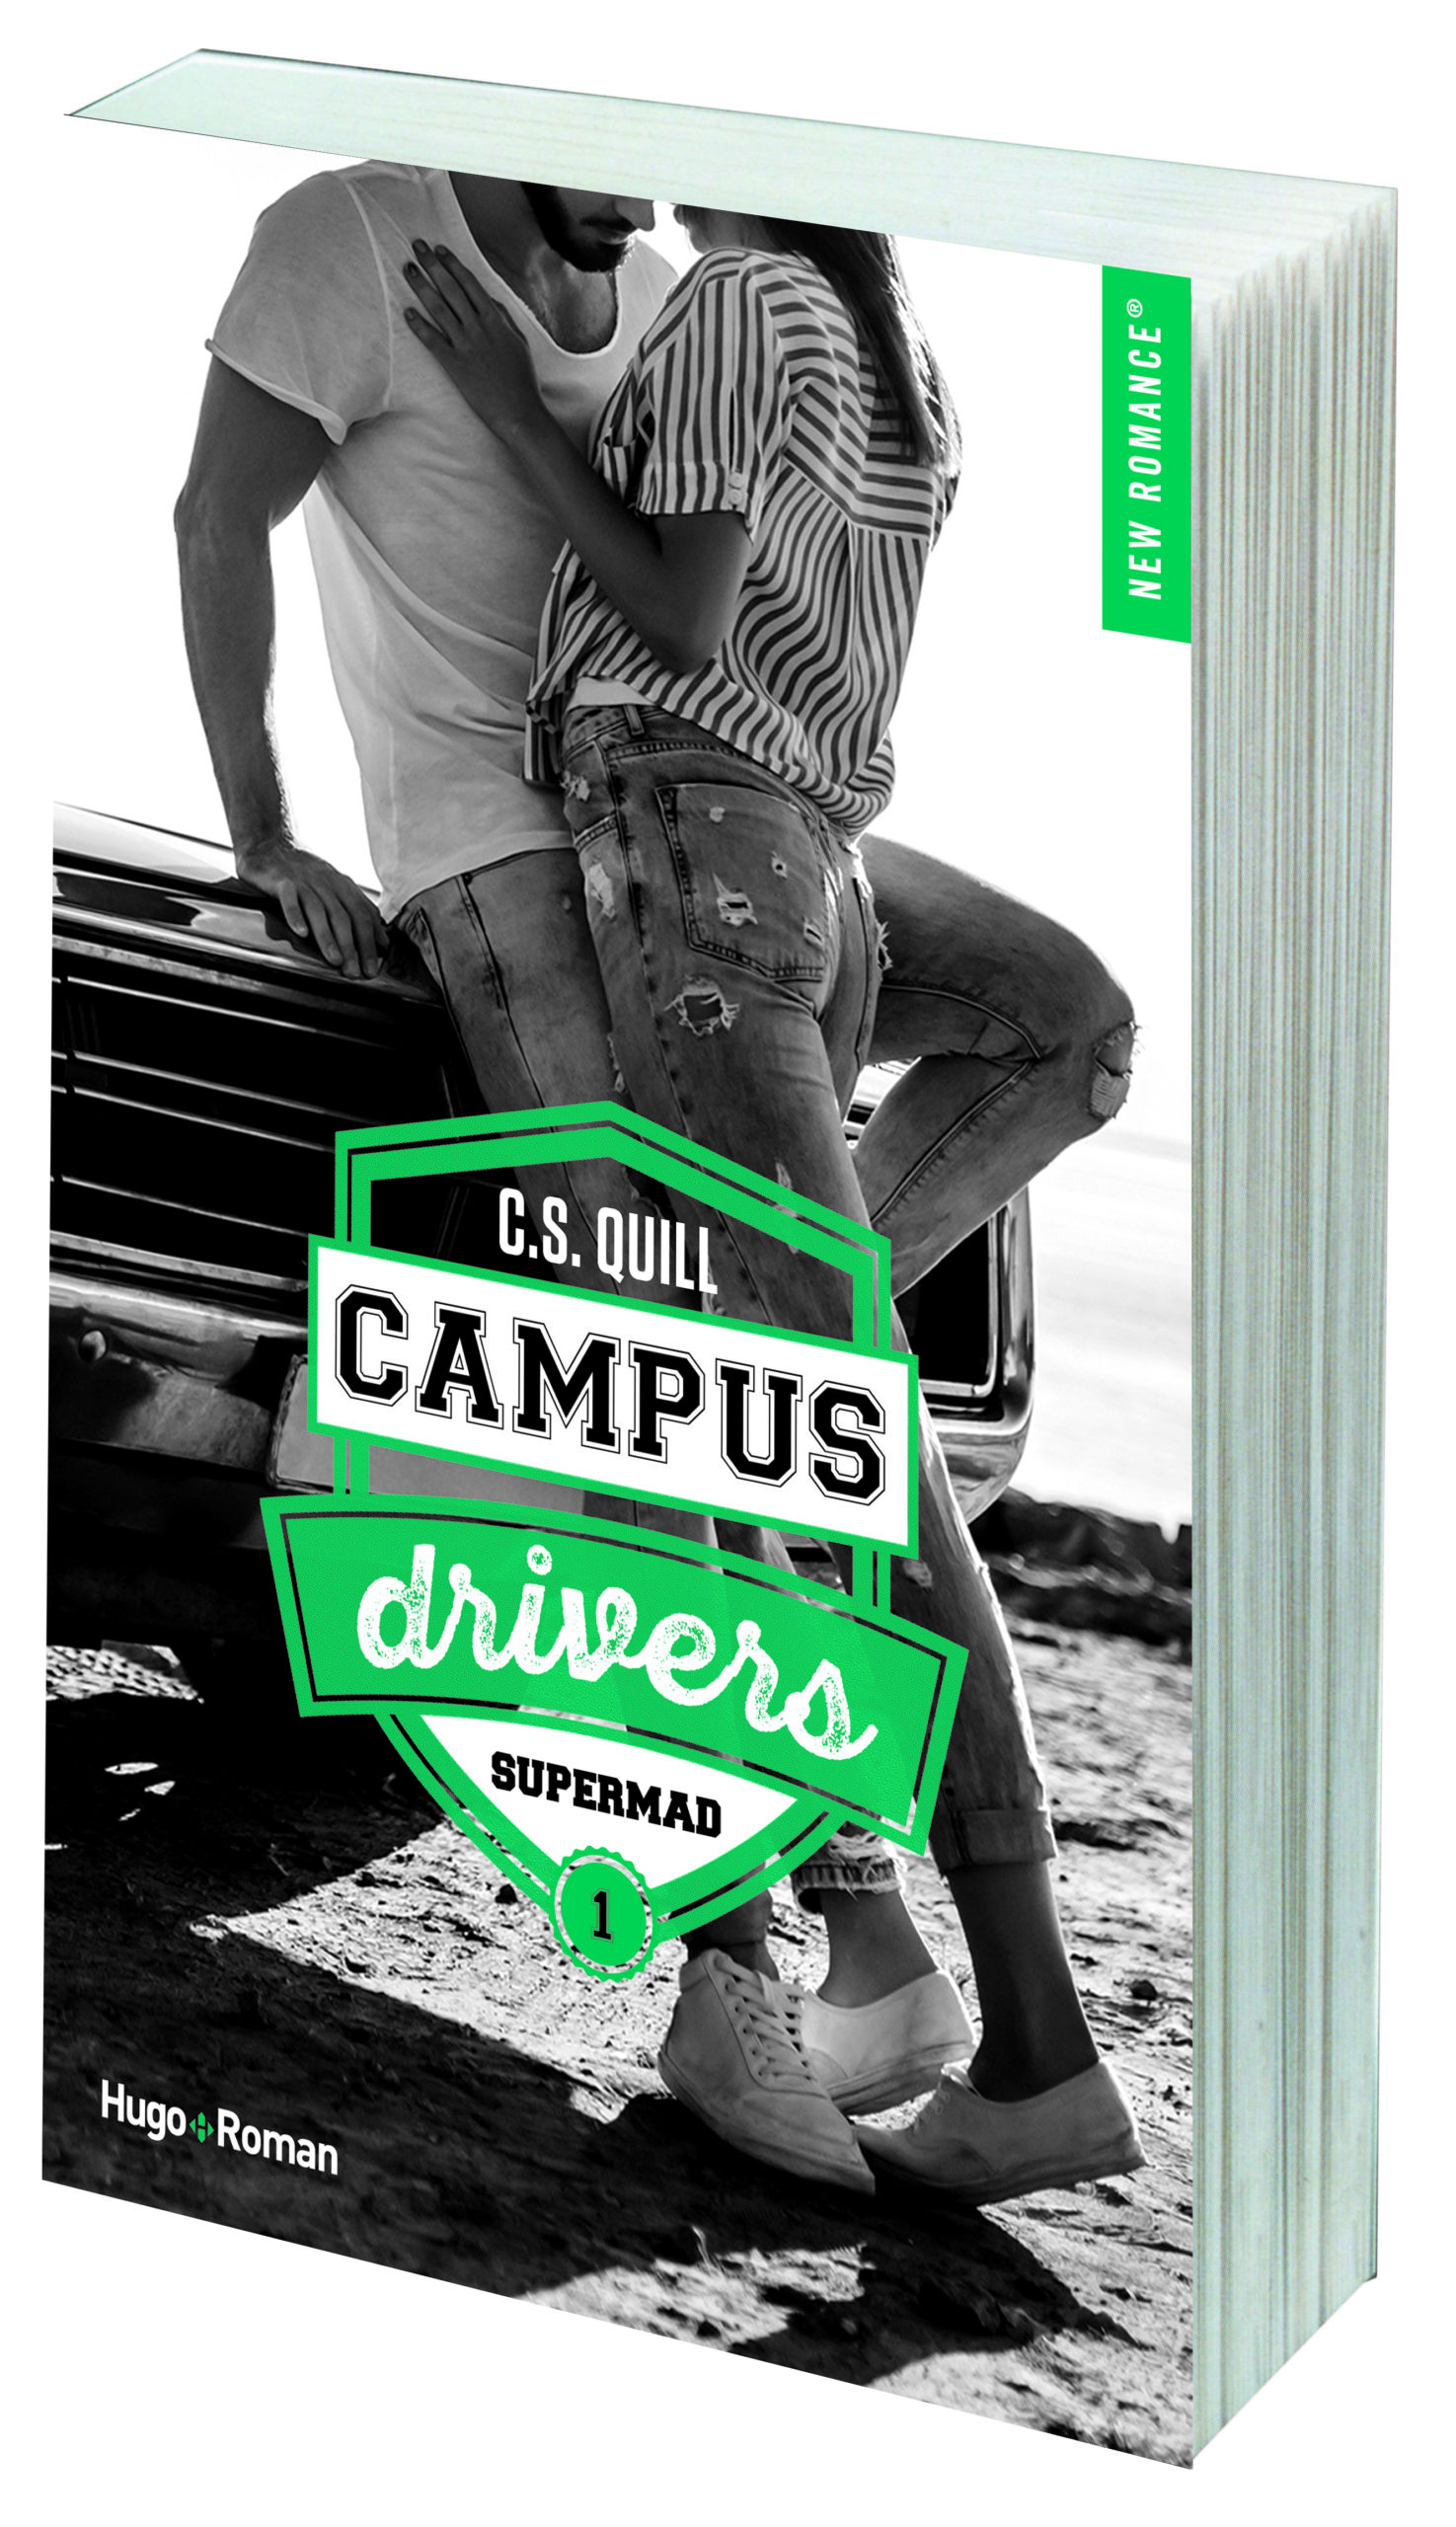 Campus drivers : Bookboyfriend de C.S.Quill – Les lectures de